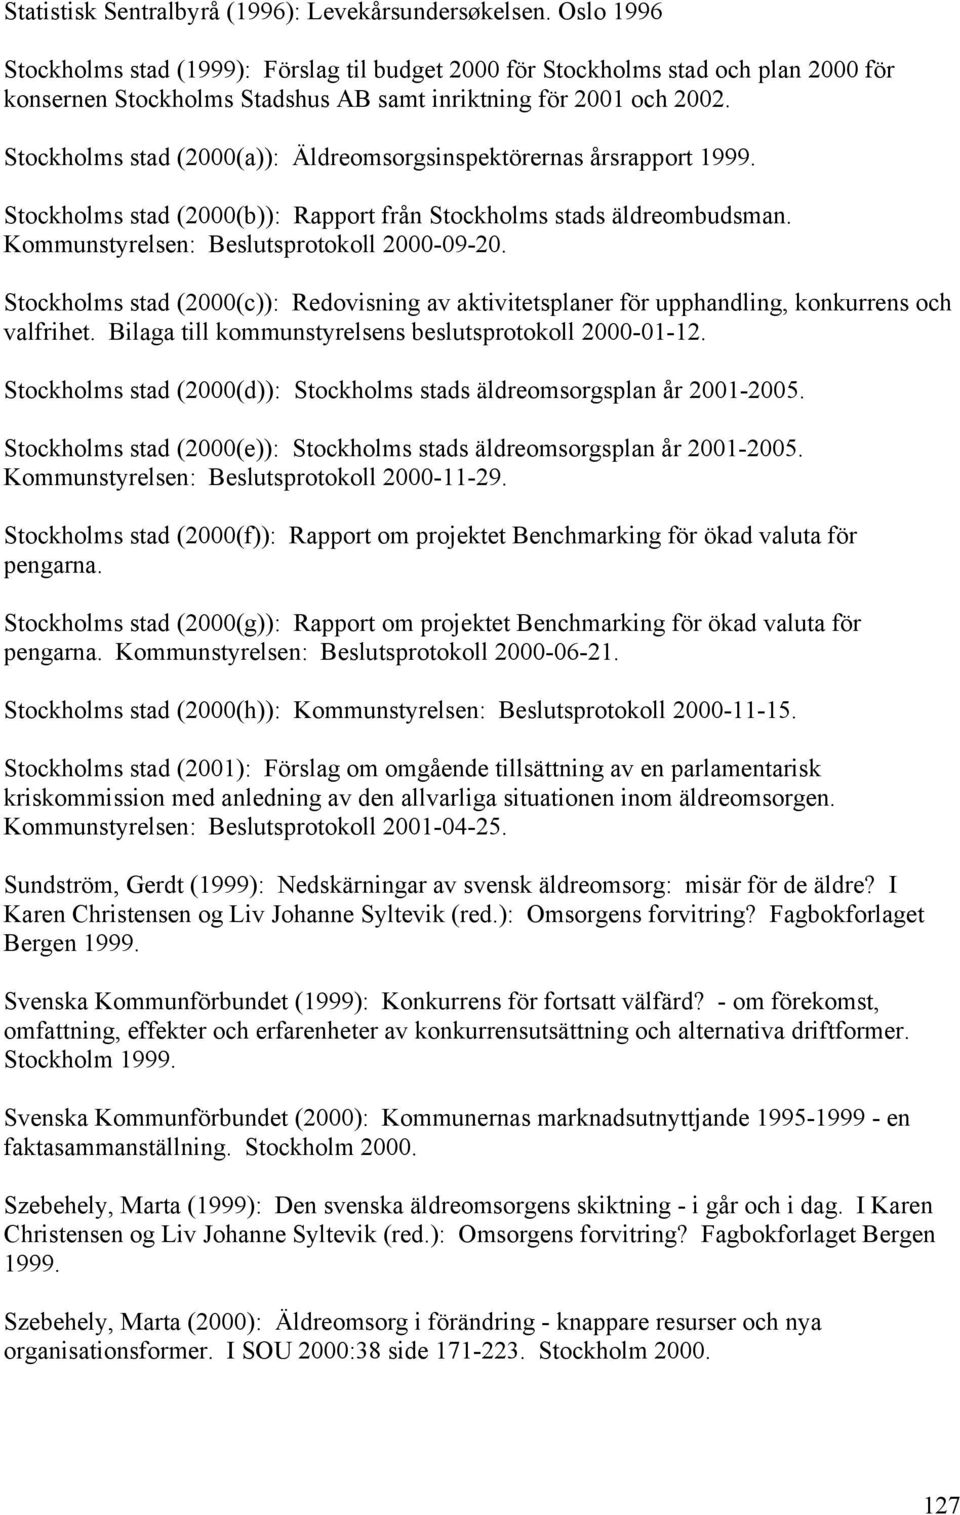 Stockholms stad (2000(a)): Äldreomsorgsinspektörernas årsrapport 1999. Stockholms stad (2000(b)): Rapport från Stockholms stads äldreombudsman. Kommunstyrelsen: Beslutsprotokoll 2000-09-20.